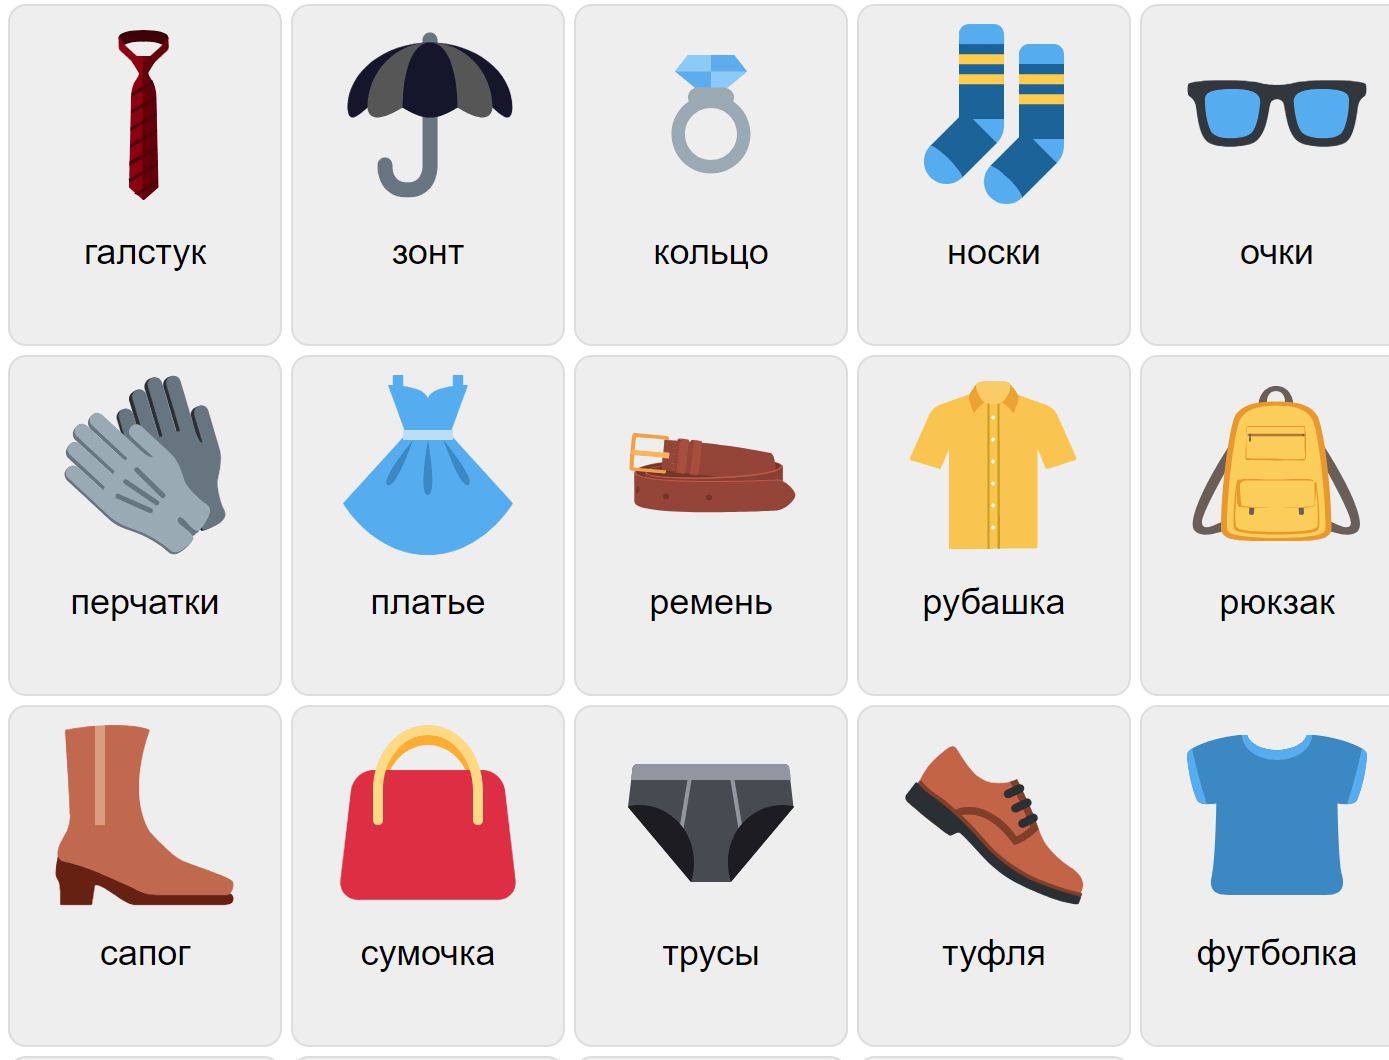 Kläder på ryska